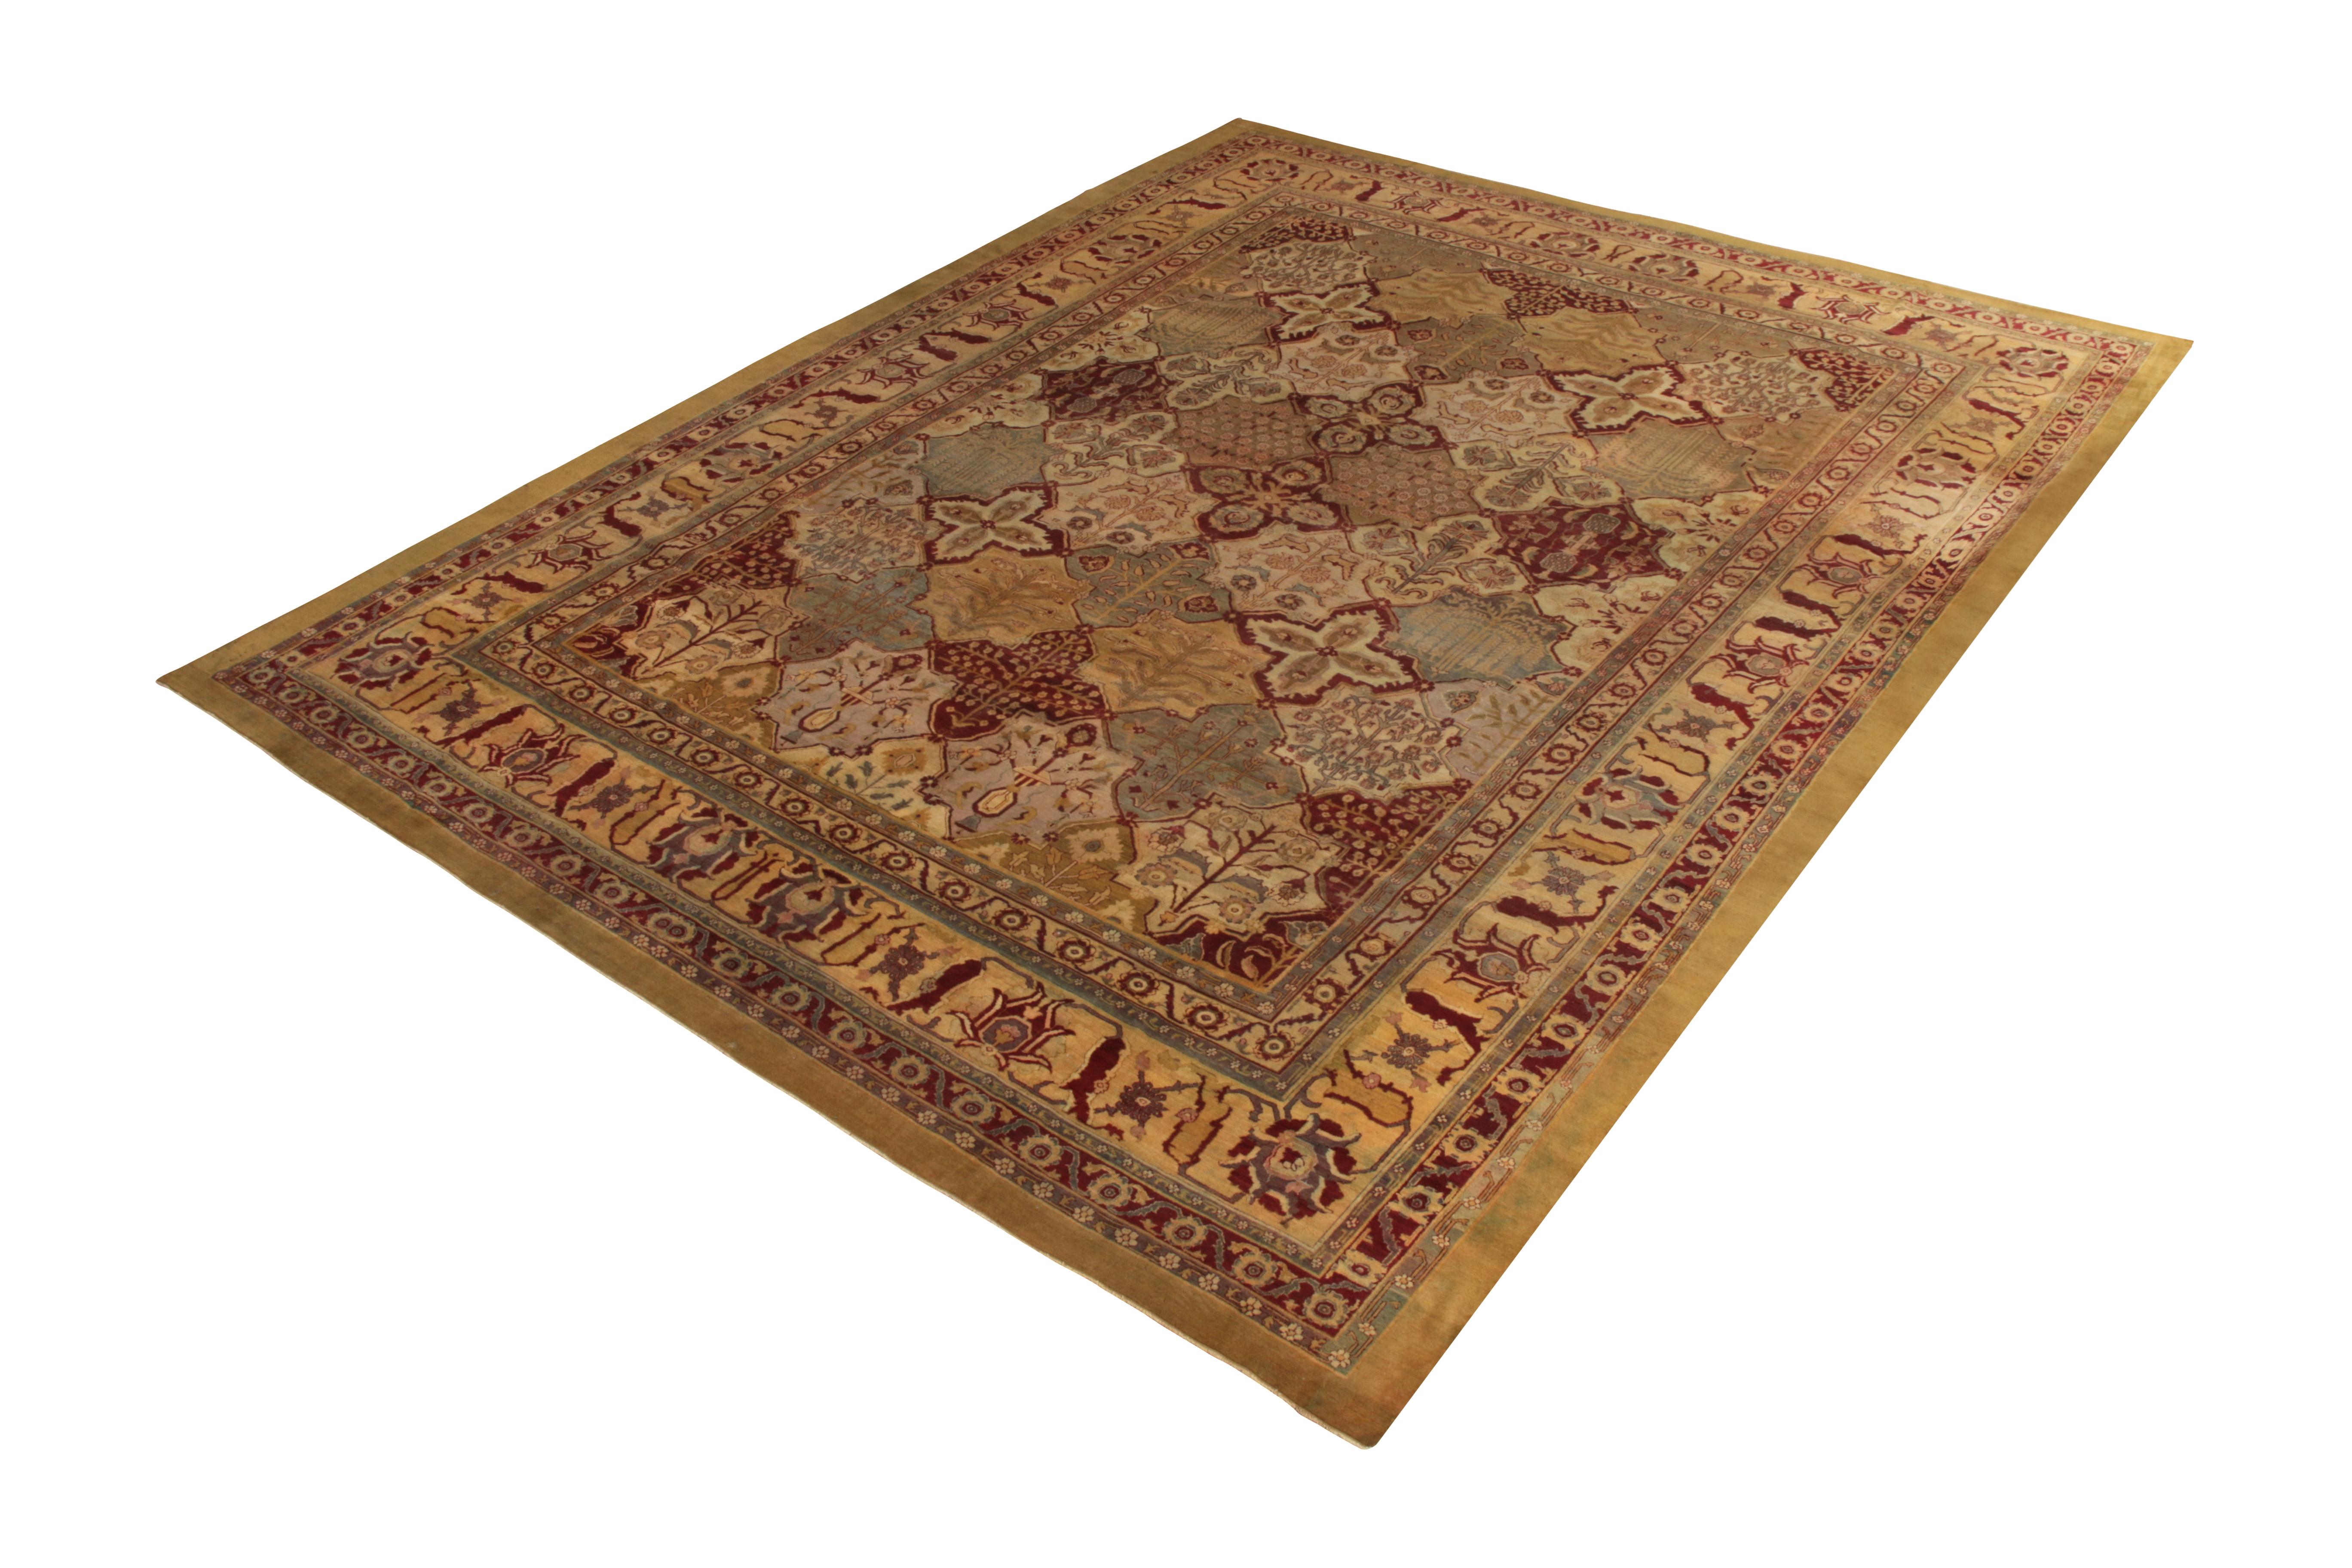 Dieser antike Teppich 12x15 aus Amritsar ist eine seltene, königliche Ergänzung der Klassiker von Rug & Kilim aus der Jahrhundertwende, handgeknüpft aus Wolle aus Indien um 1900-1910.

Über das Design:

Die sich wiederholenden floralen